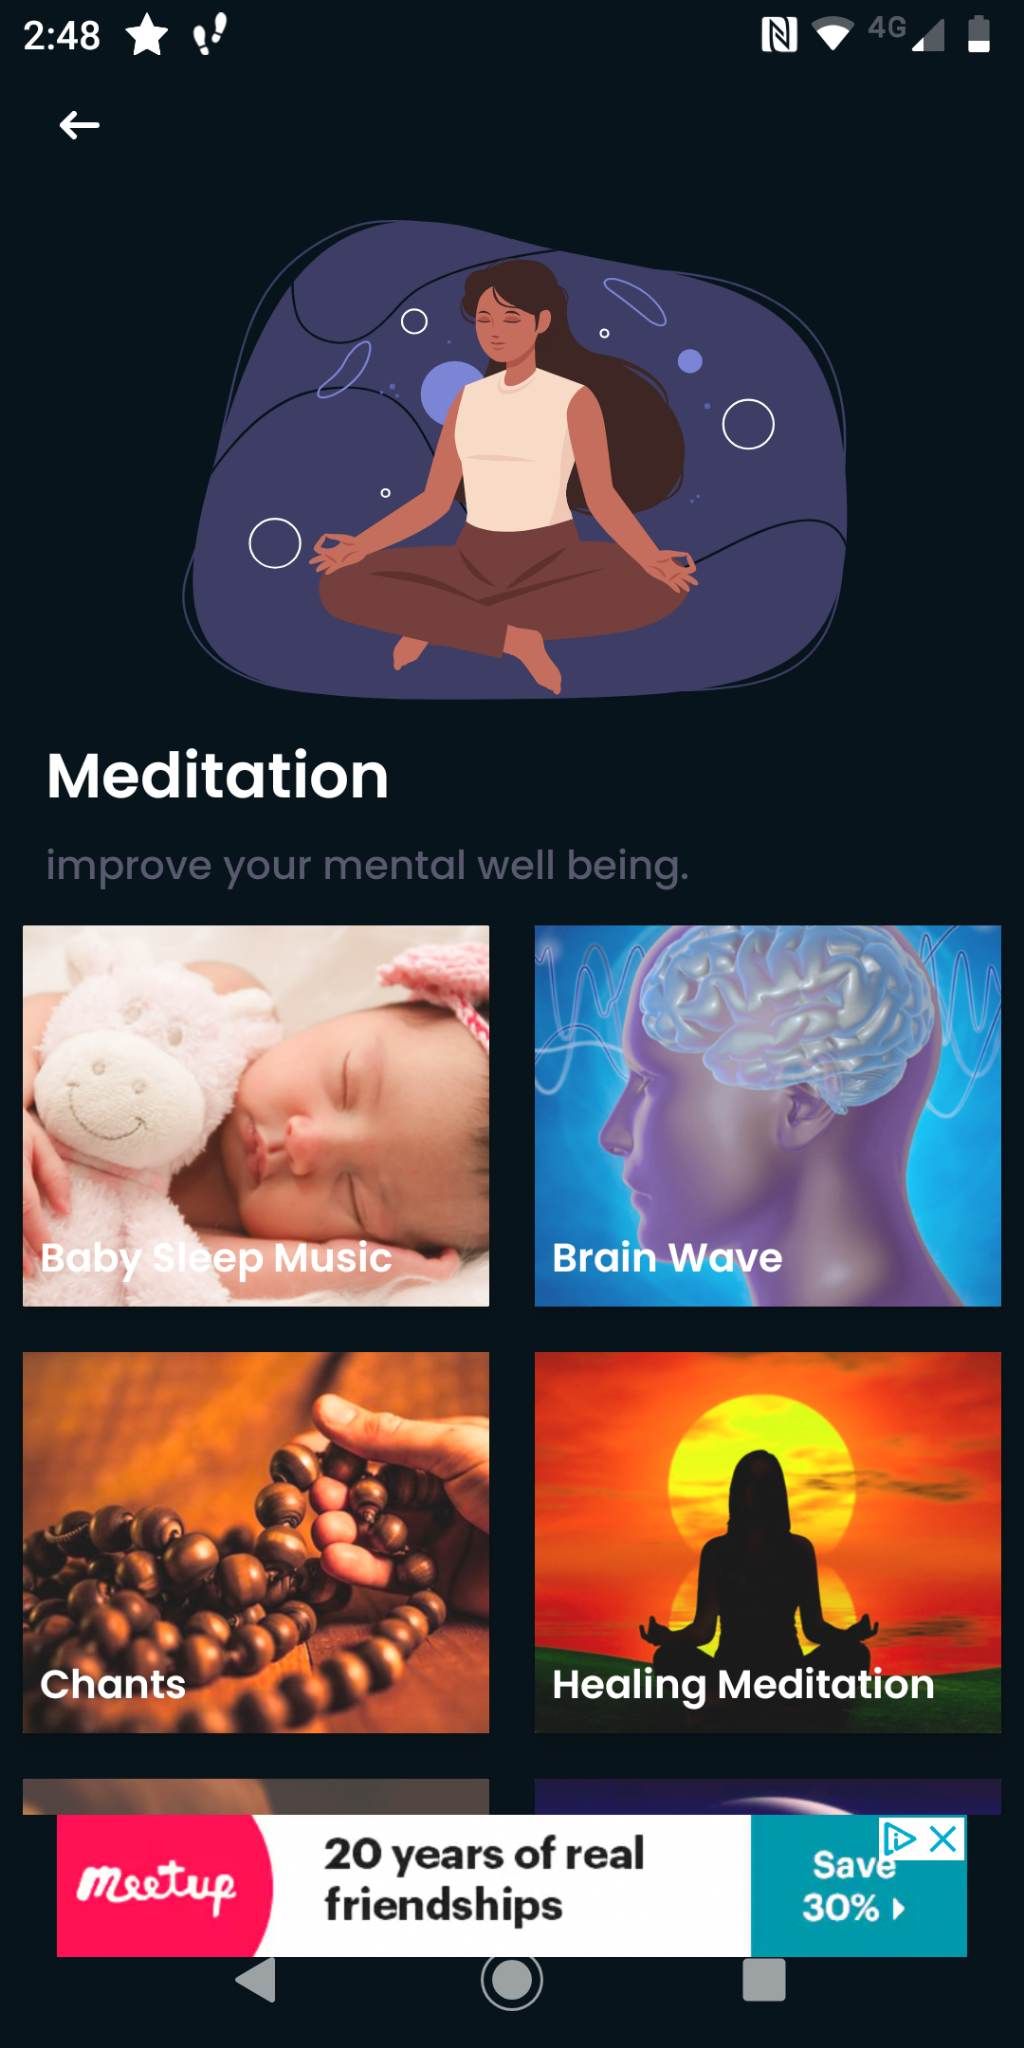 Life: Meditation & Sleep Music meditation options